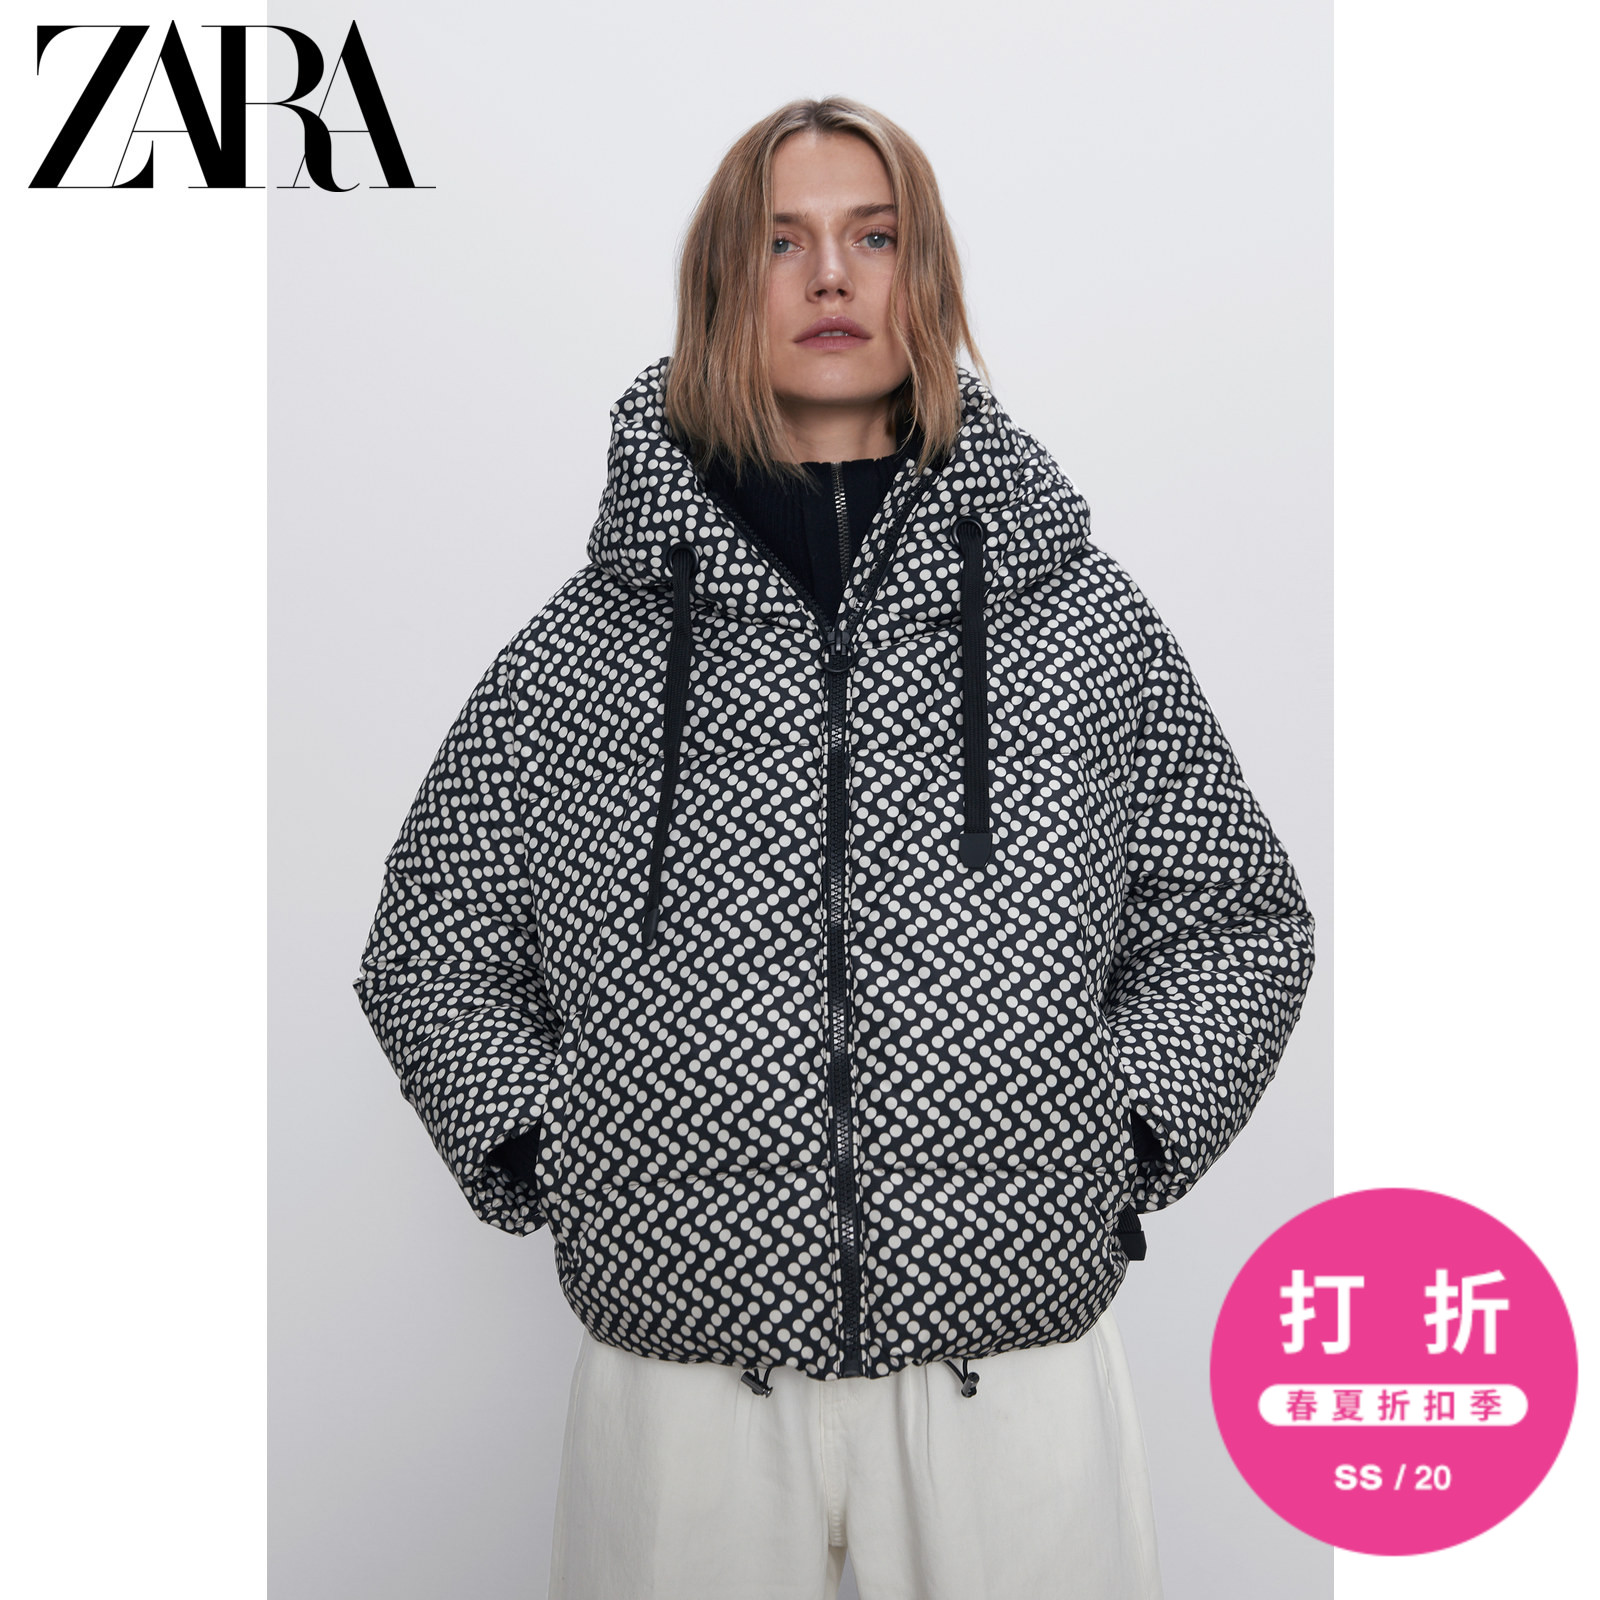 ZARA新款 女装 印花绗缝外套 08073032070 XS (160/80A) 裸色 / 黑色